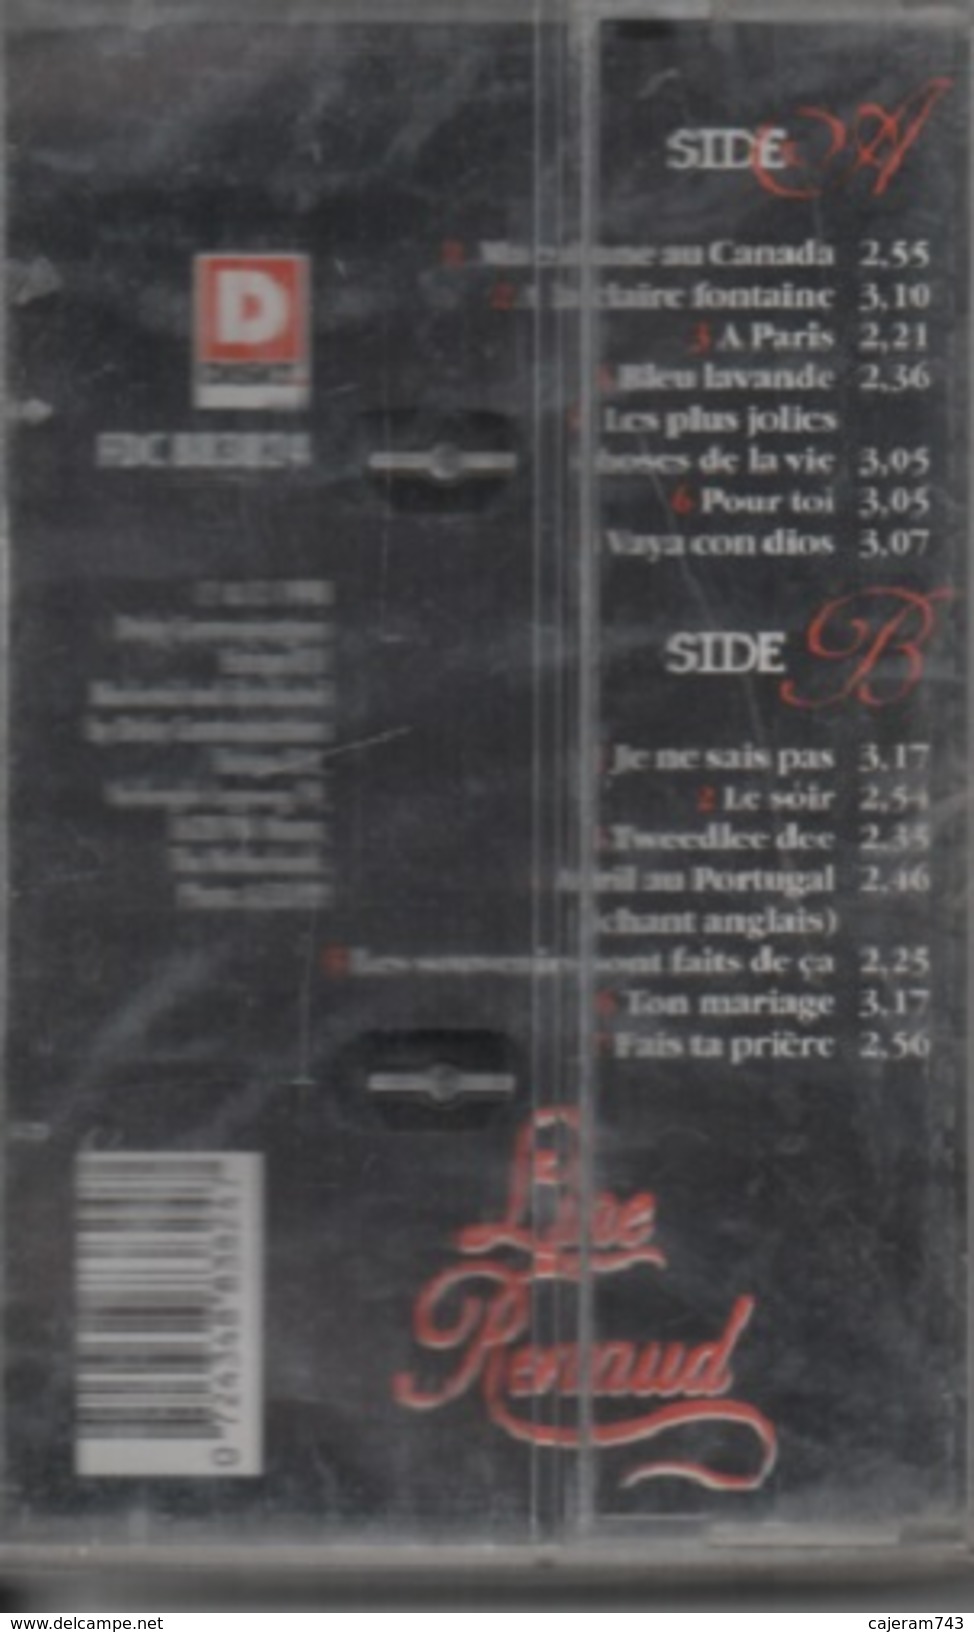 K7 Audio. Line RENAUD. Les Meilleurs - NEUVE Sous Cellophane - 14 Titres. - Cassettes Audio